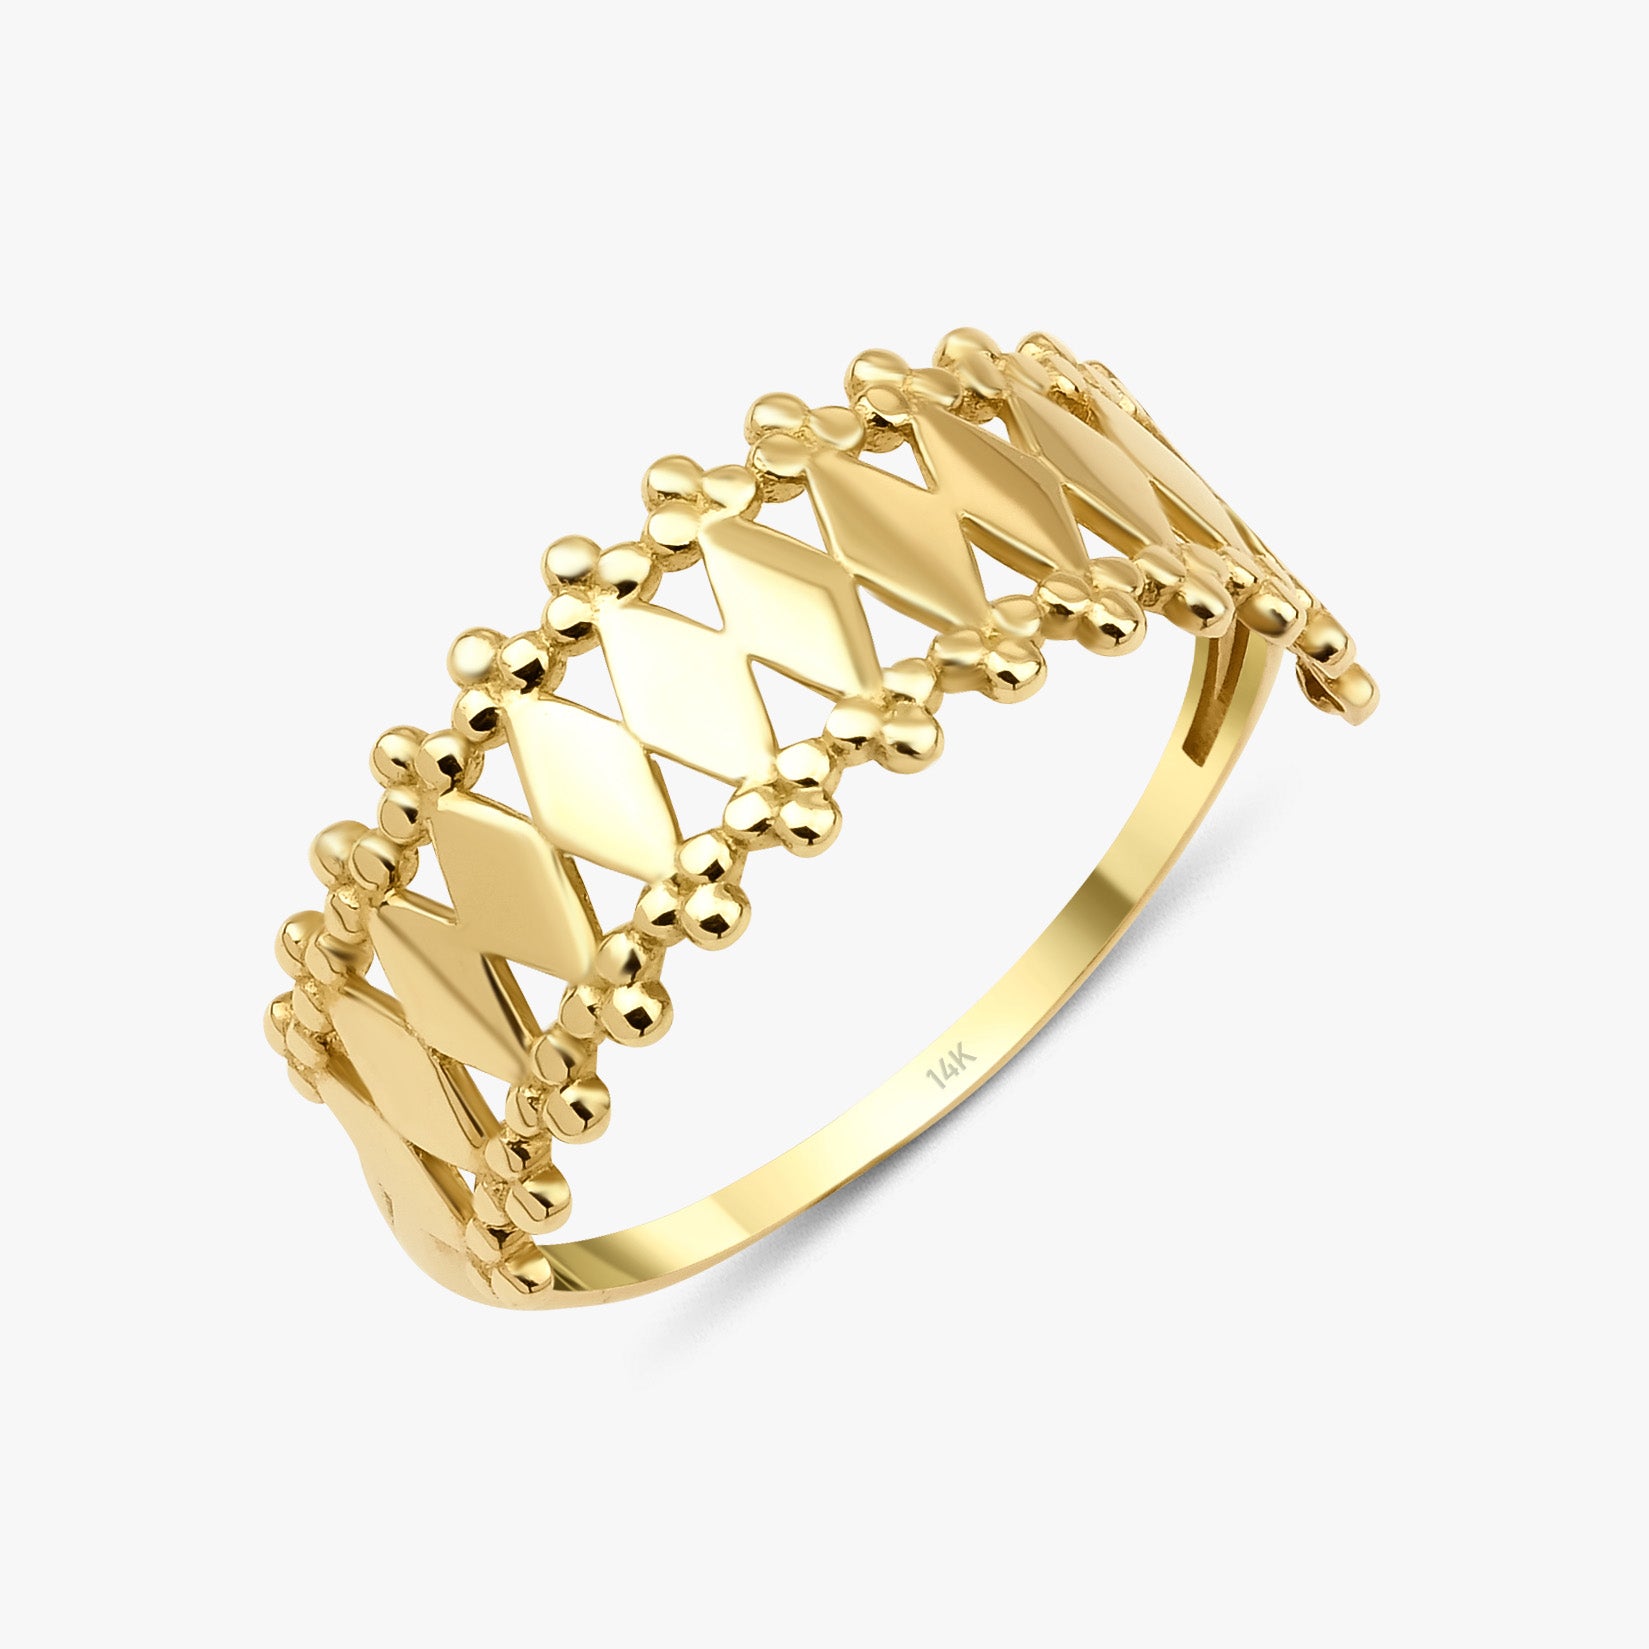 14K Gold Crown Ring